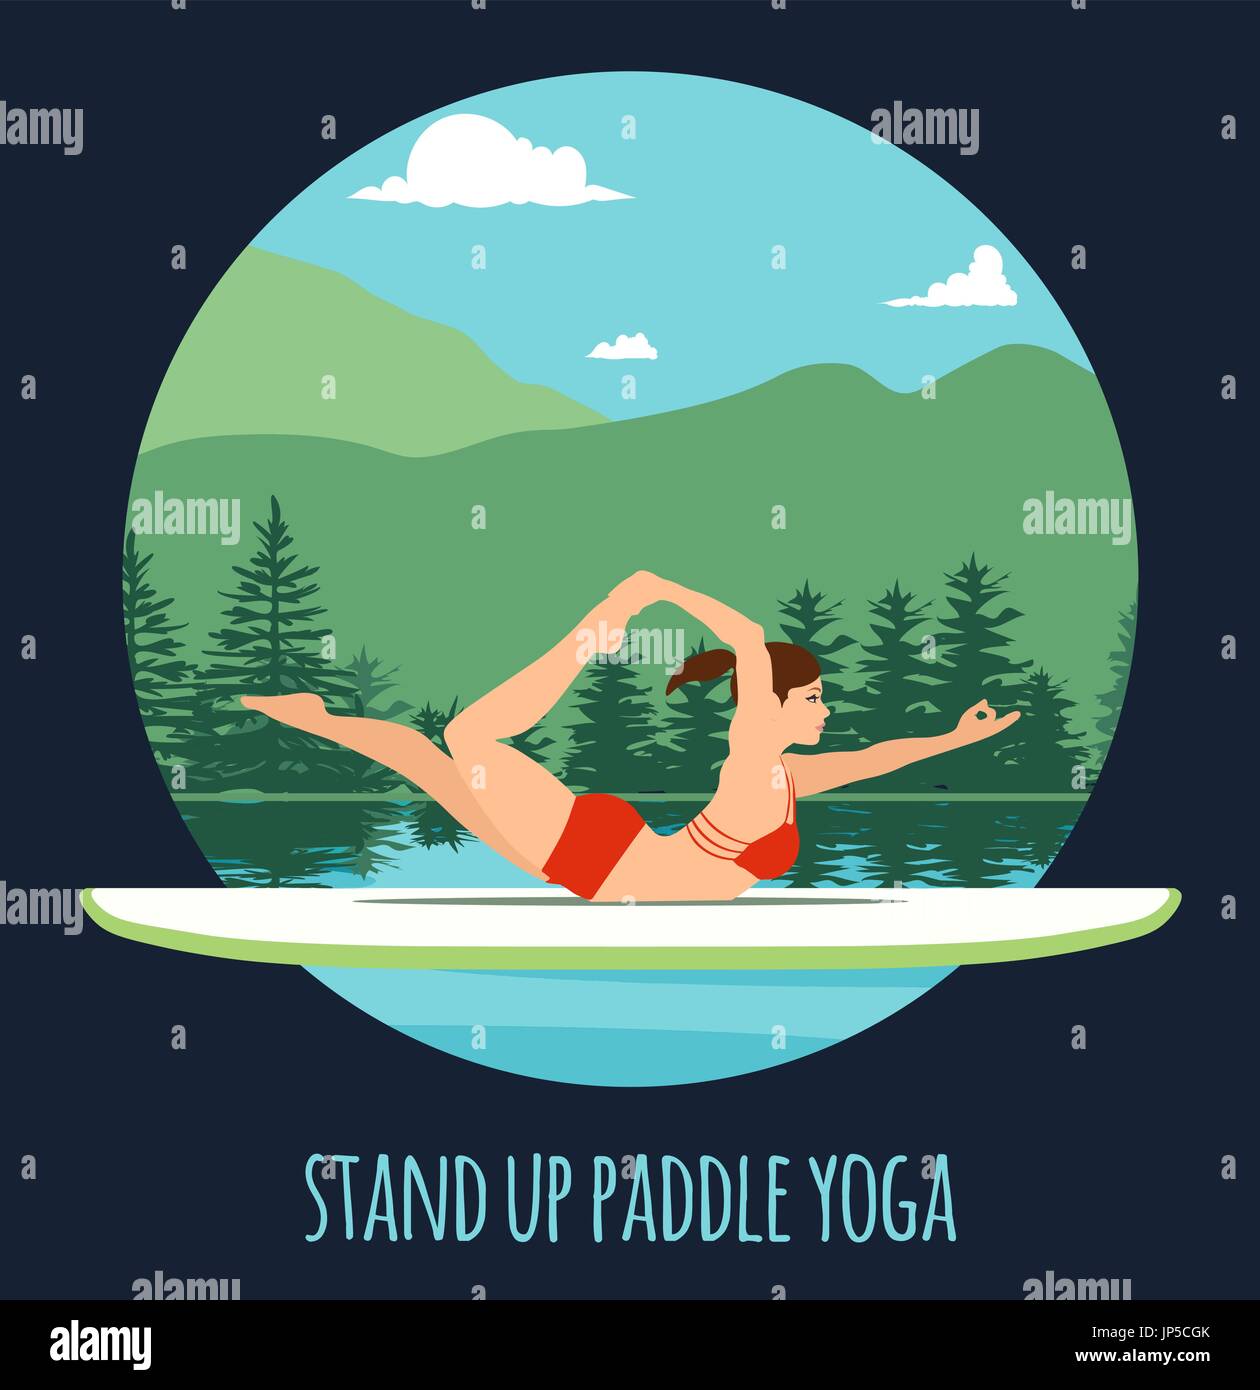 Frau am See Berglandschaft Stand Up Paddle Yoga Training Stand Up Paddling Yoga am Paddle Board auf dem Wasser zu tun Stock Vektor